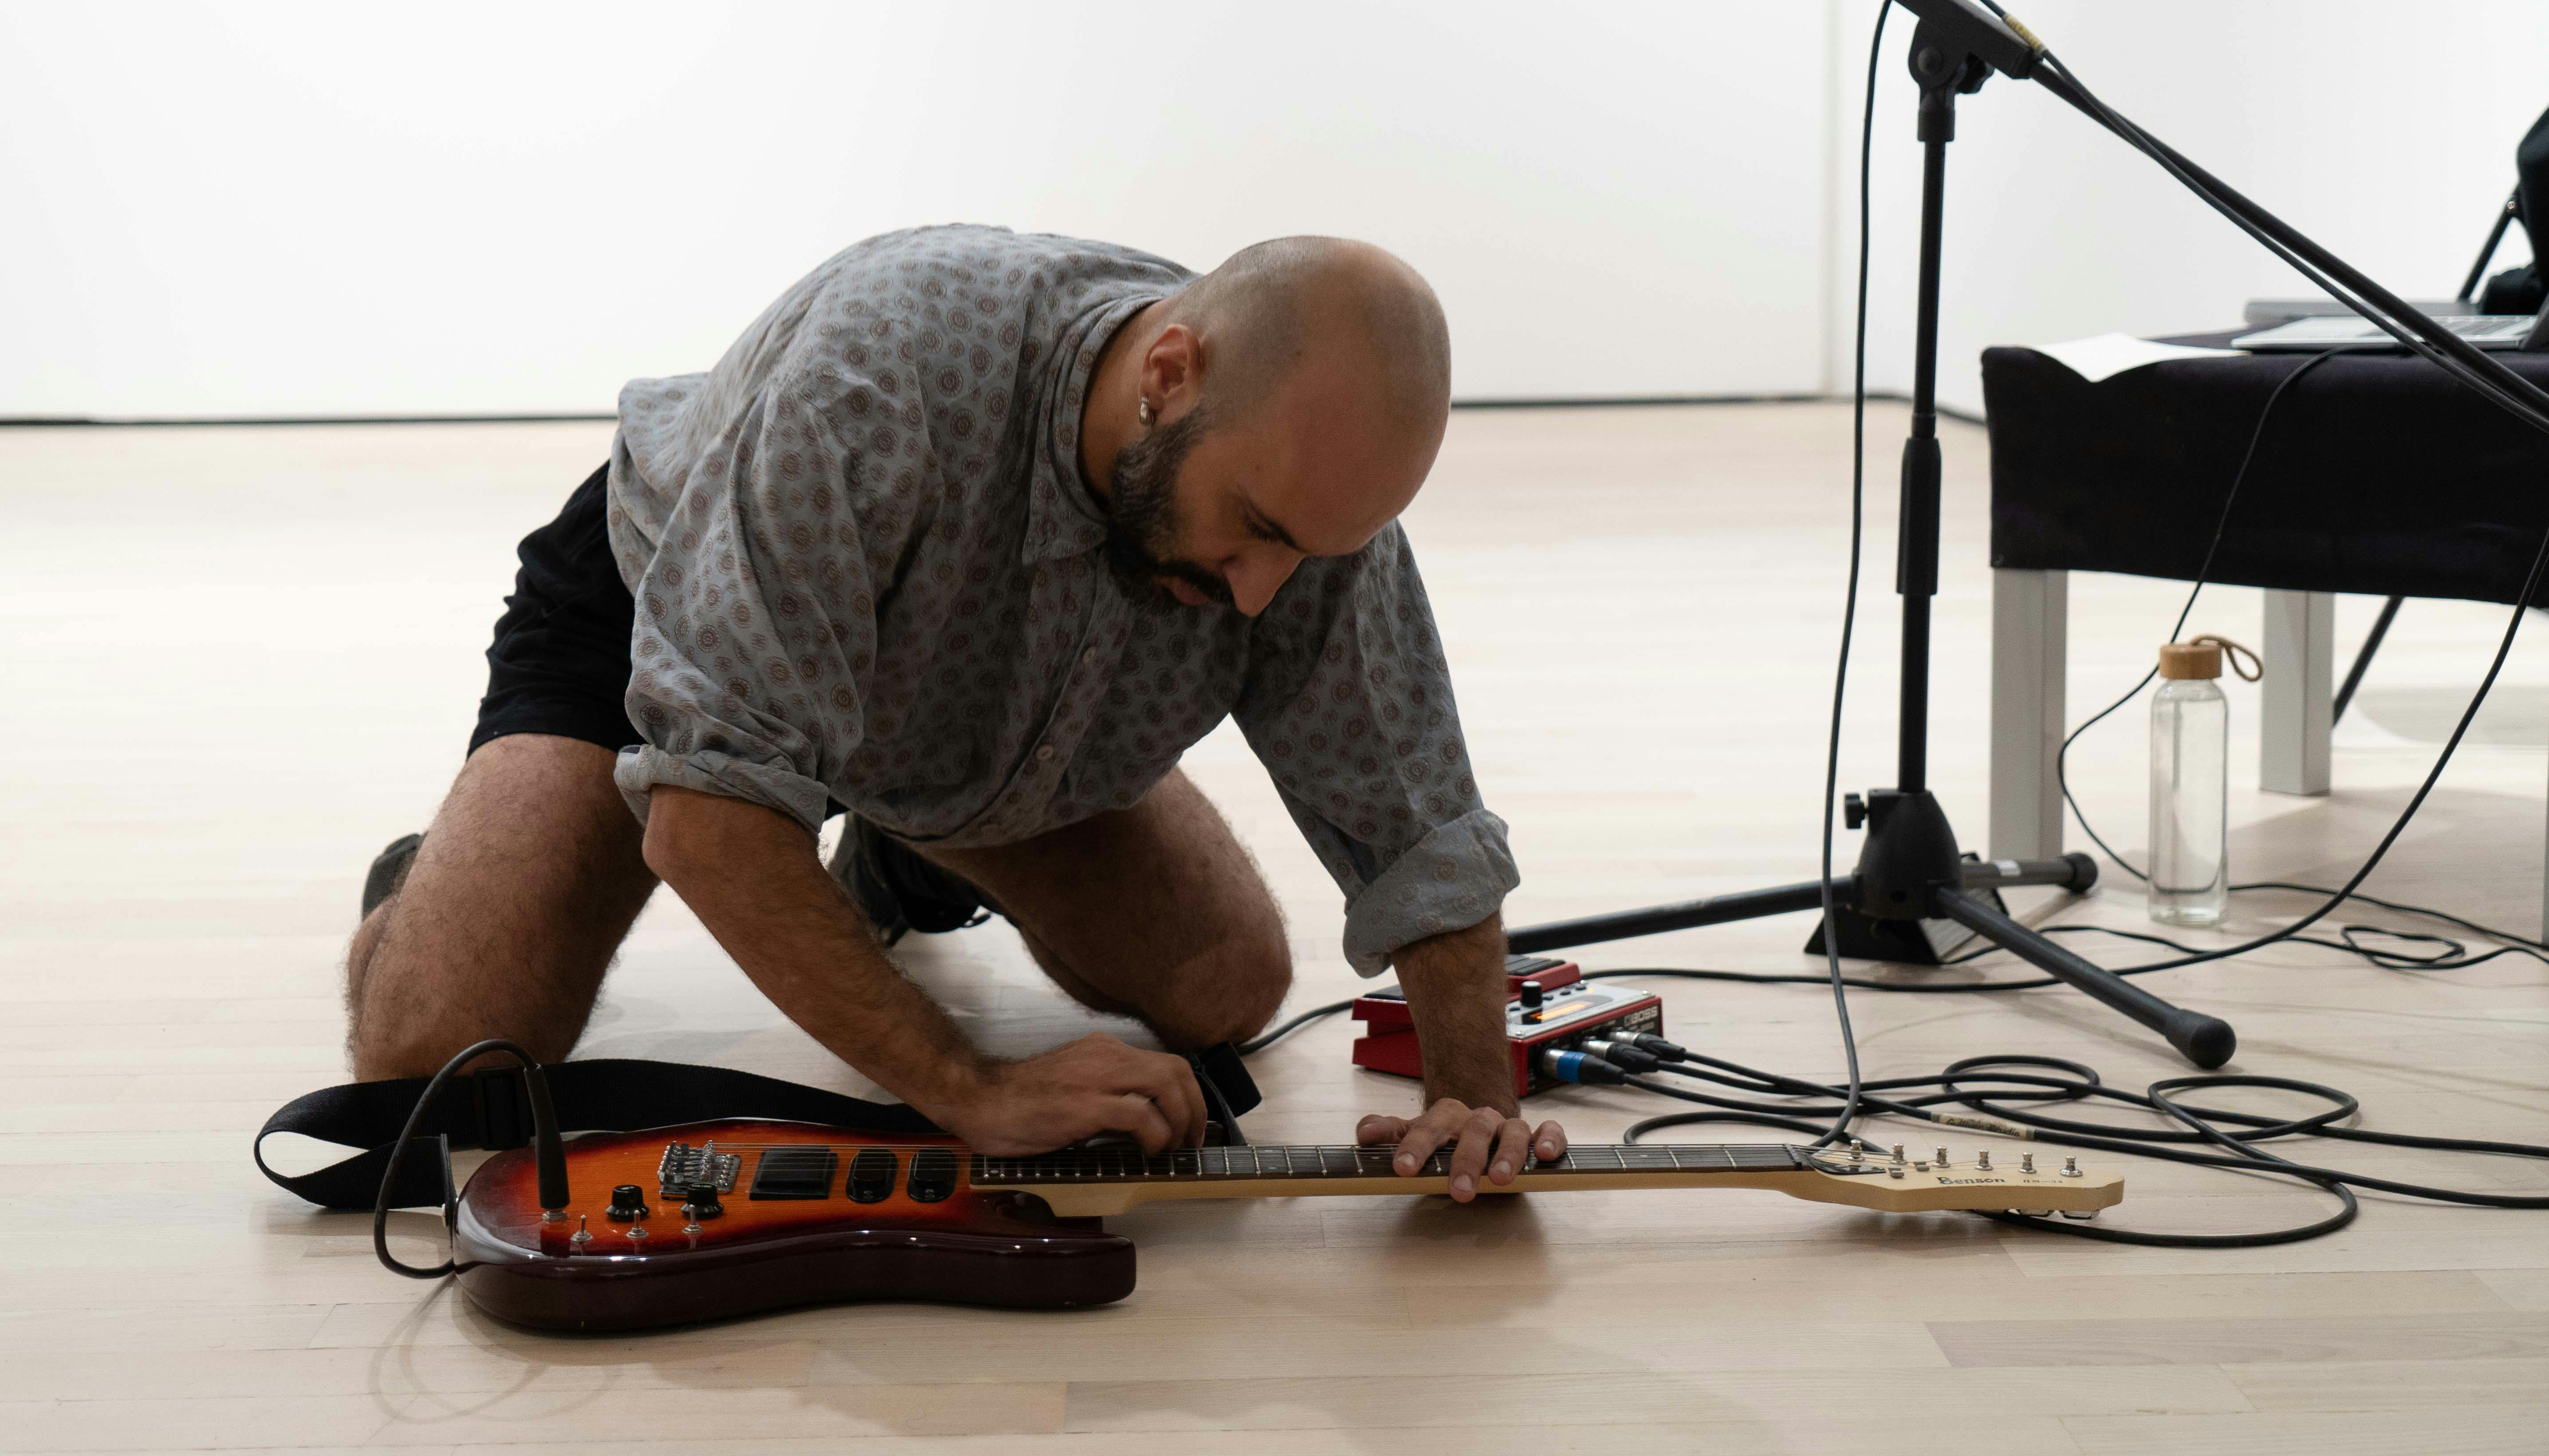 Daniele Ninarello, inginocchiato, suona una chitarra elettrica appoggiata a terra. Di fianco a lui ci sono un tavolino  nero e un asta per microfono.